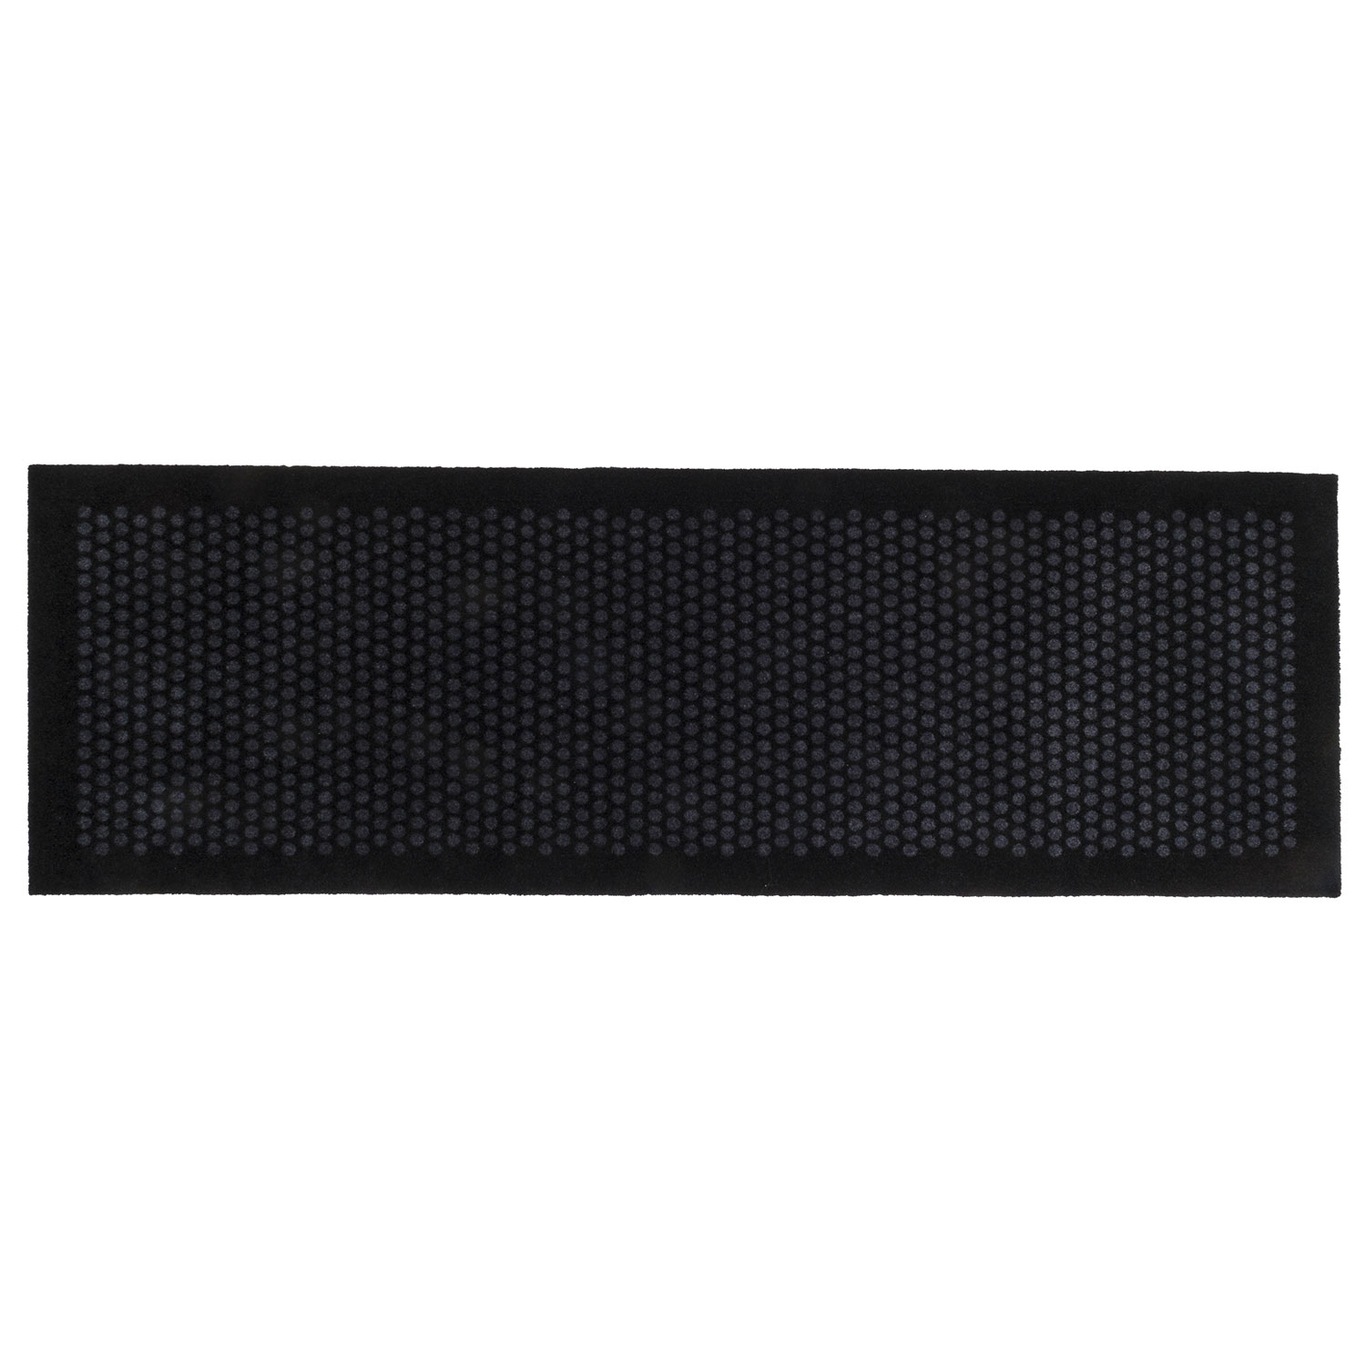 Dot Doormat 67x200cm, Black/Grey